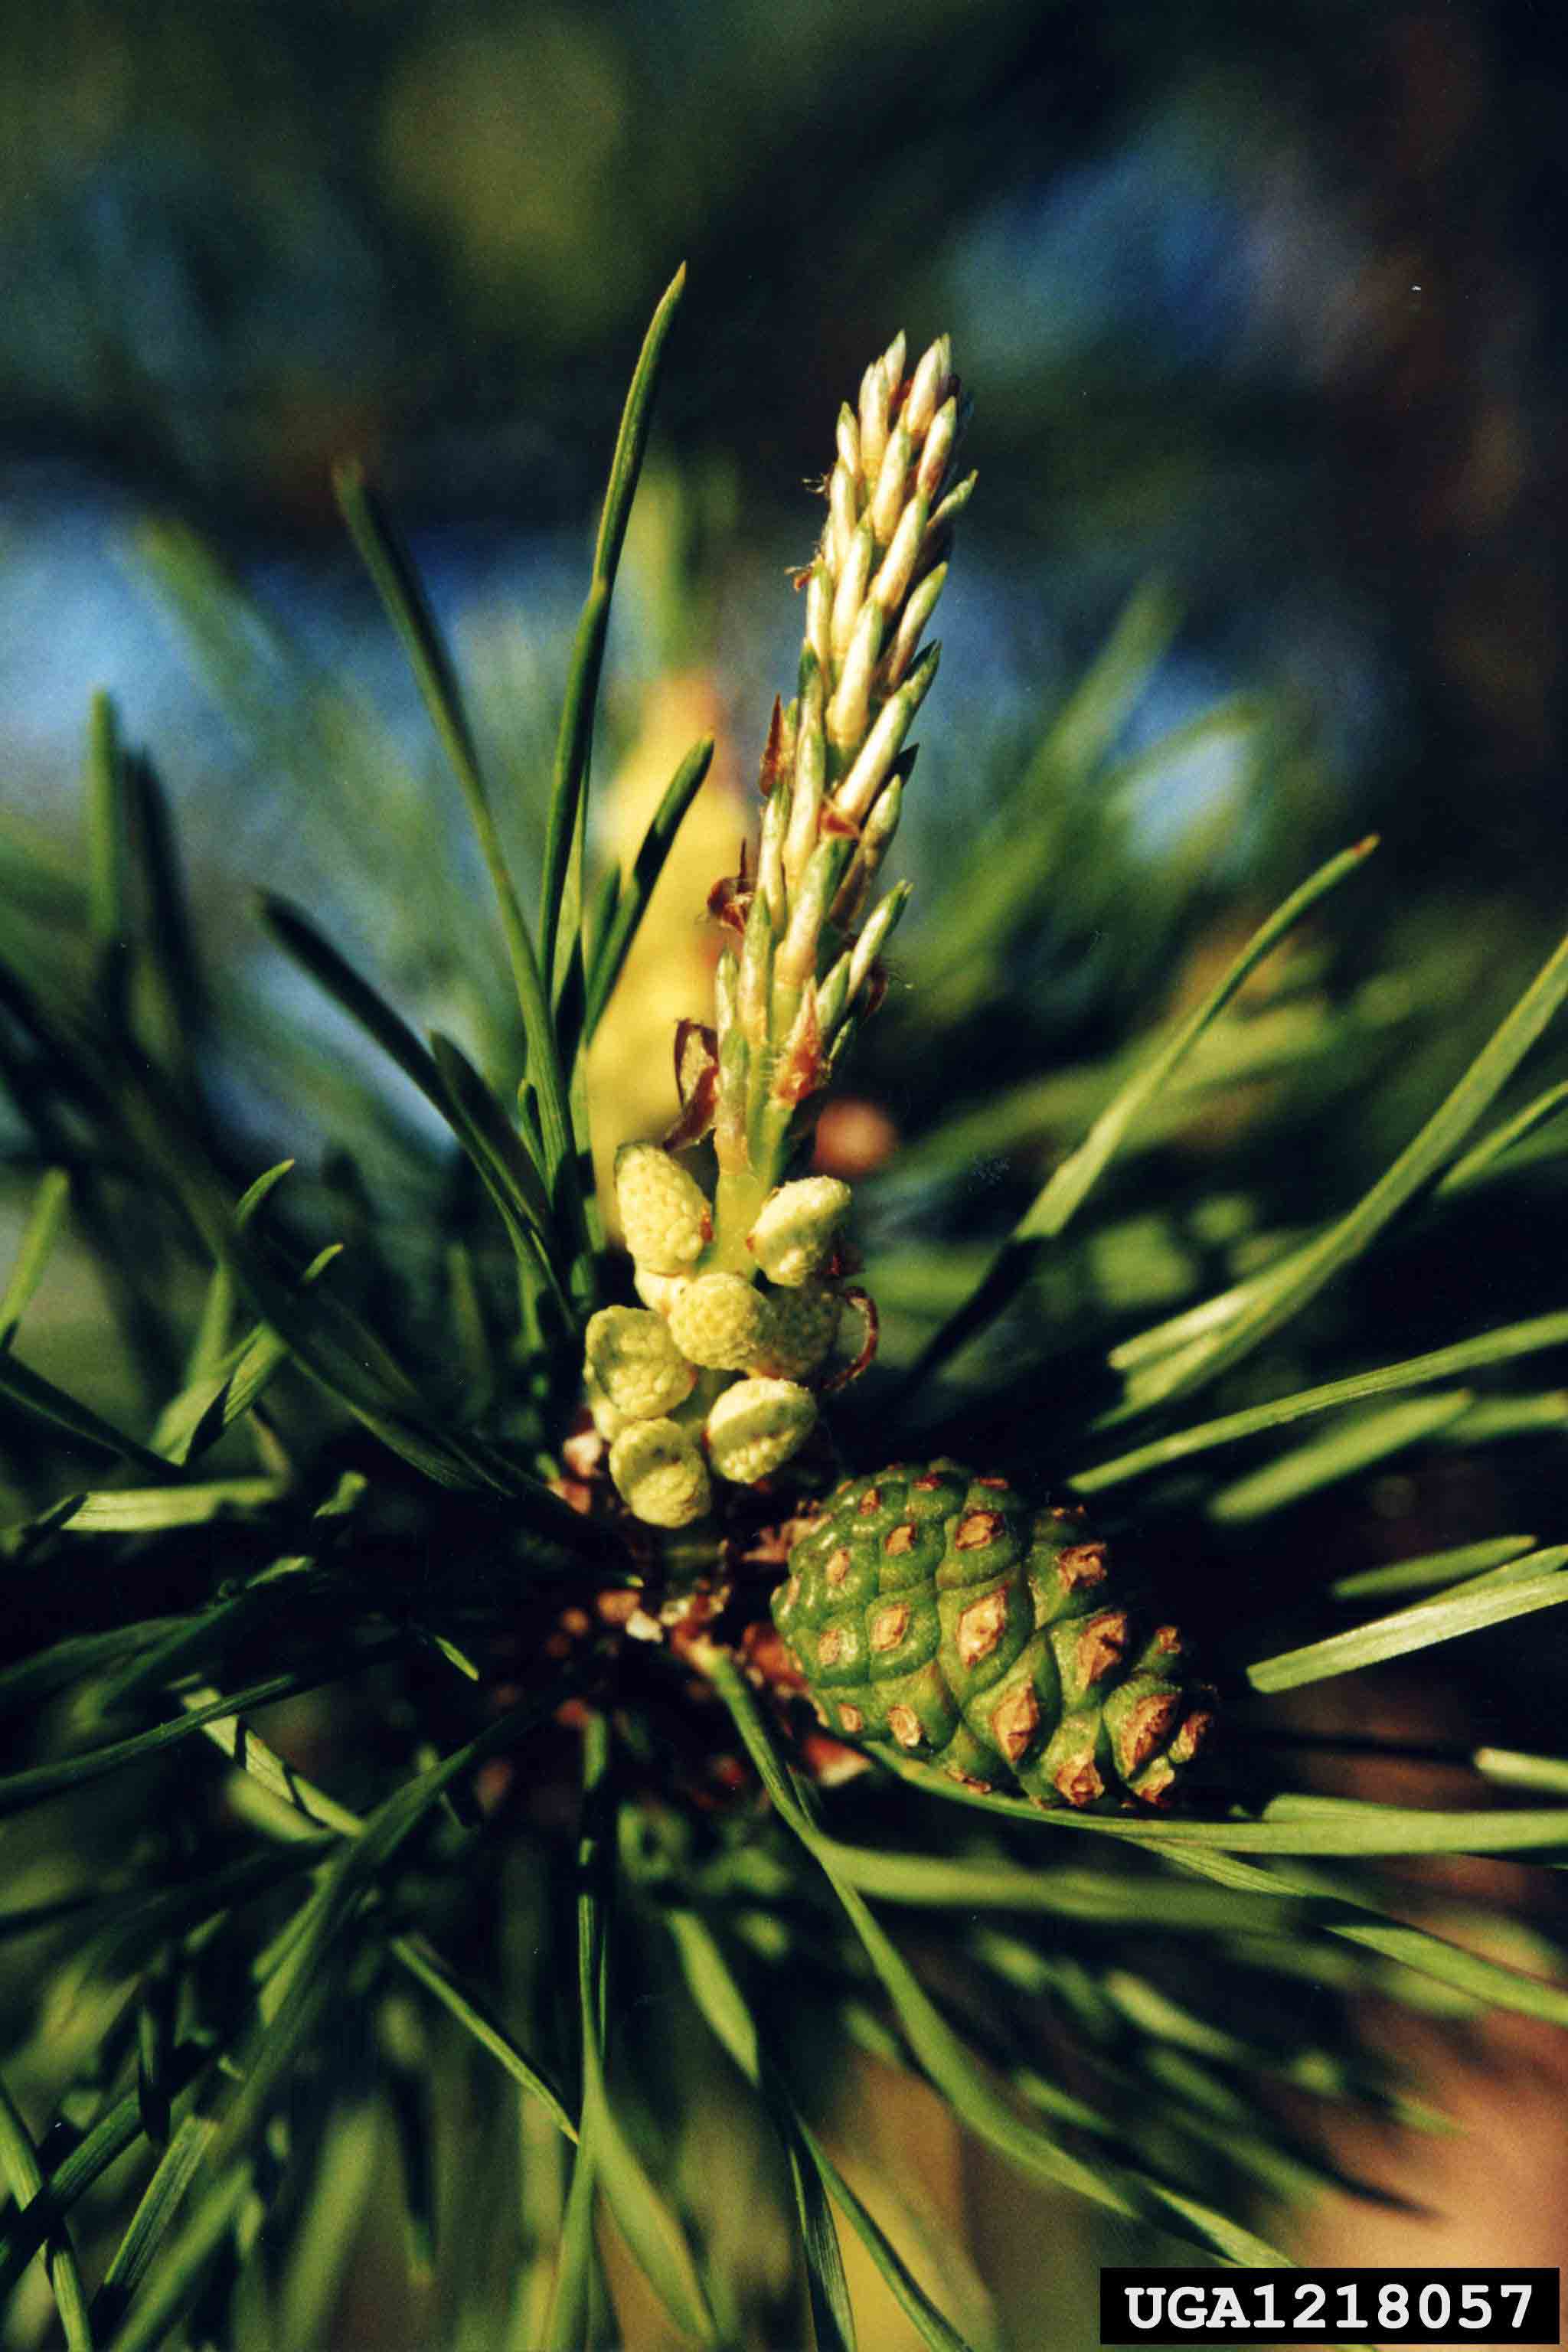 Scotch pine cones and foliage